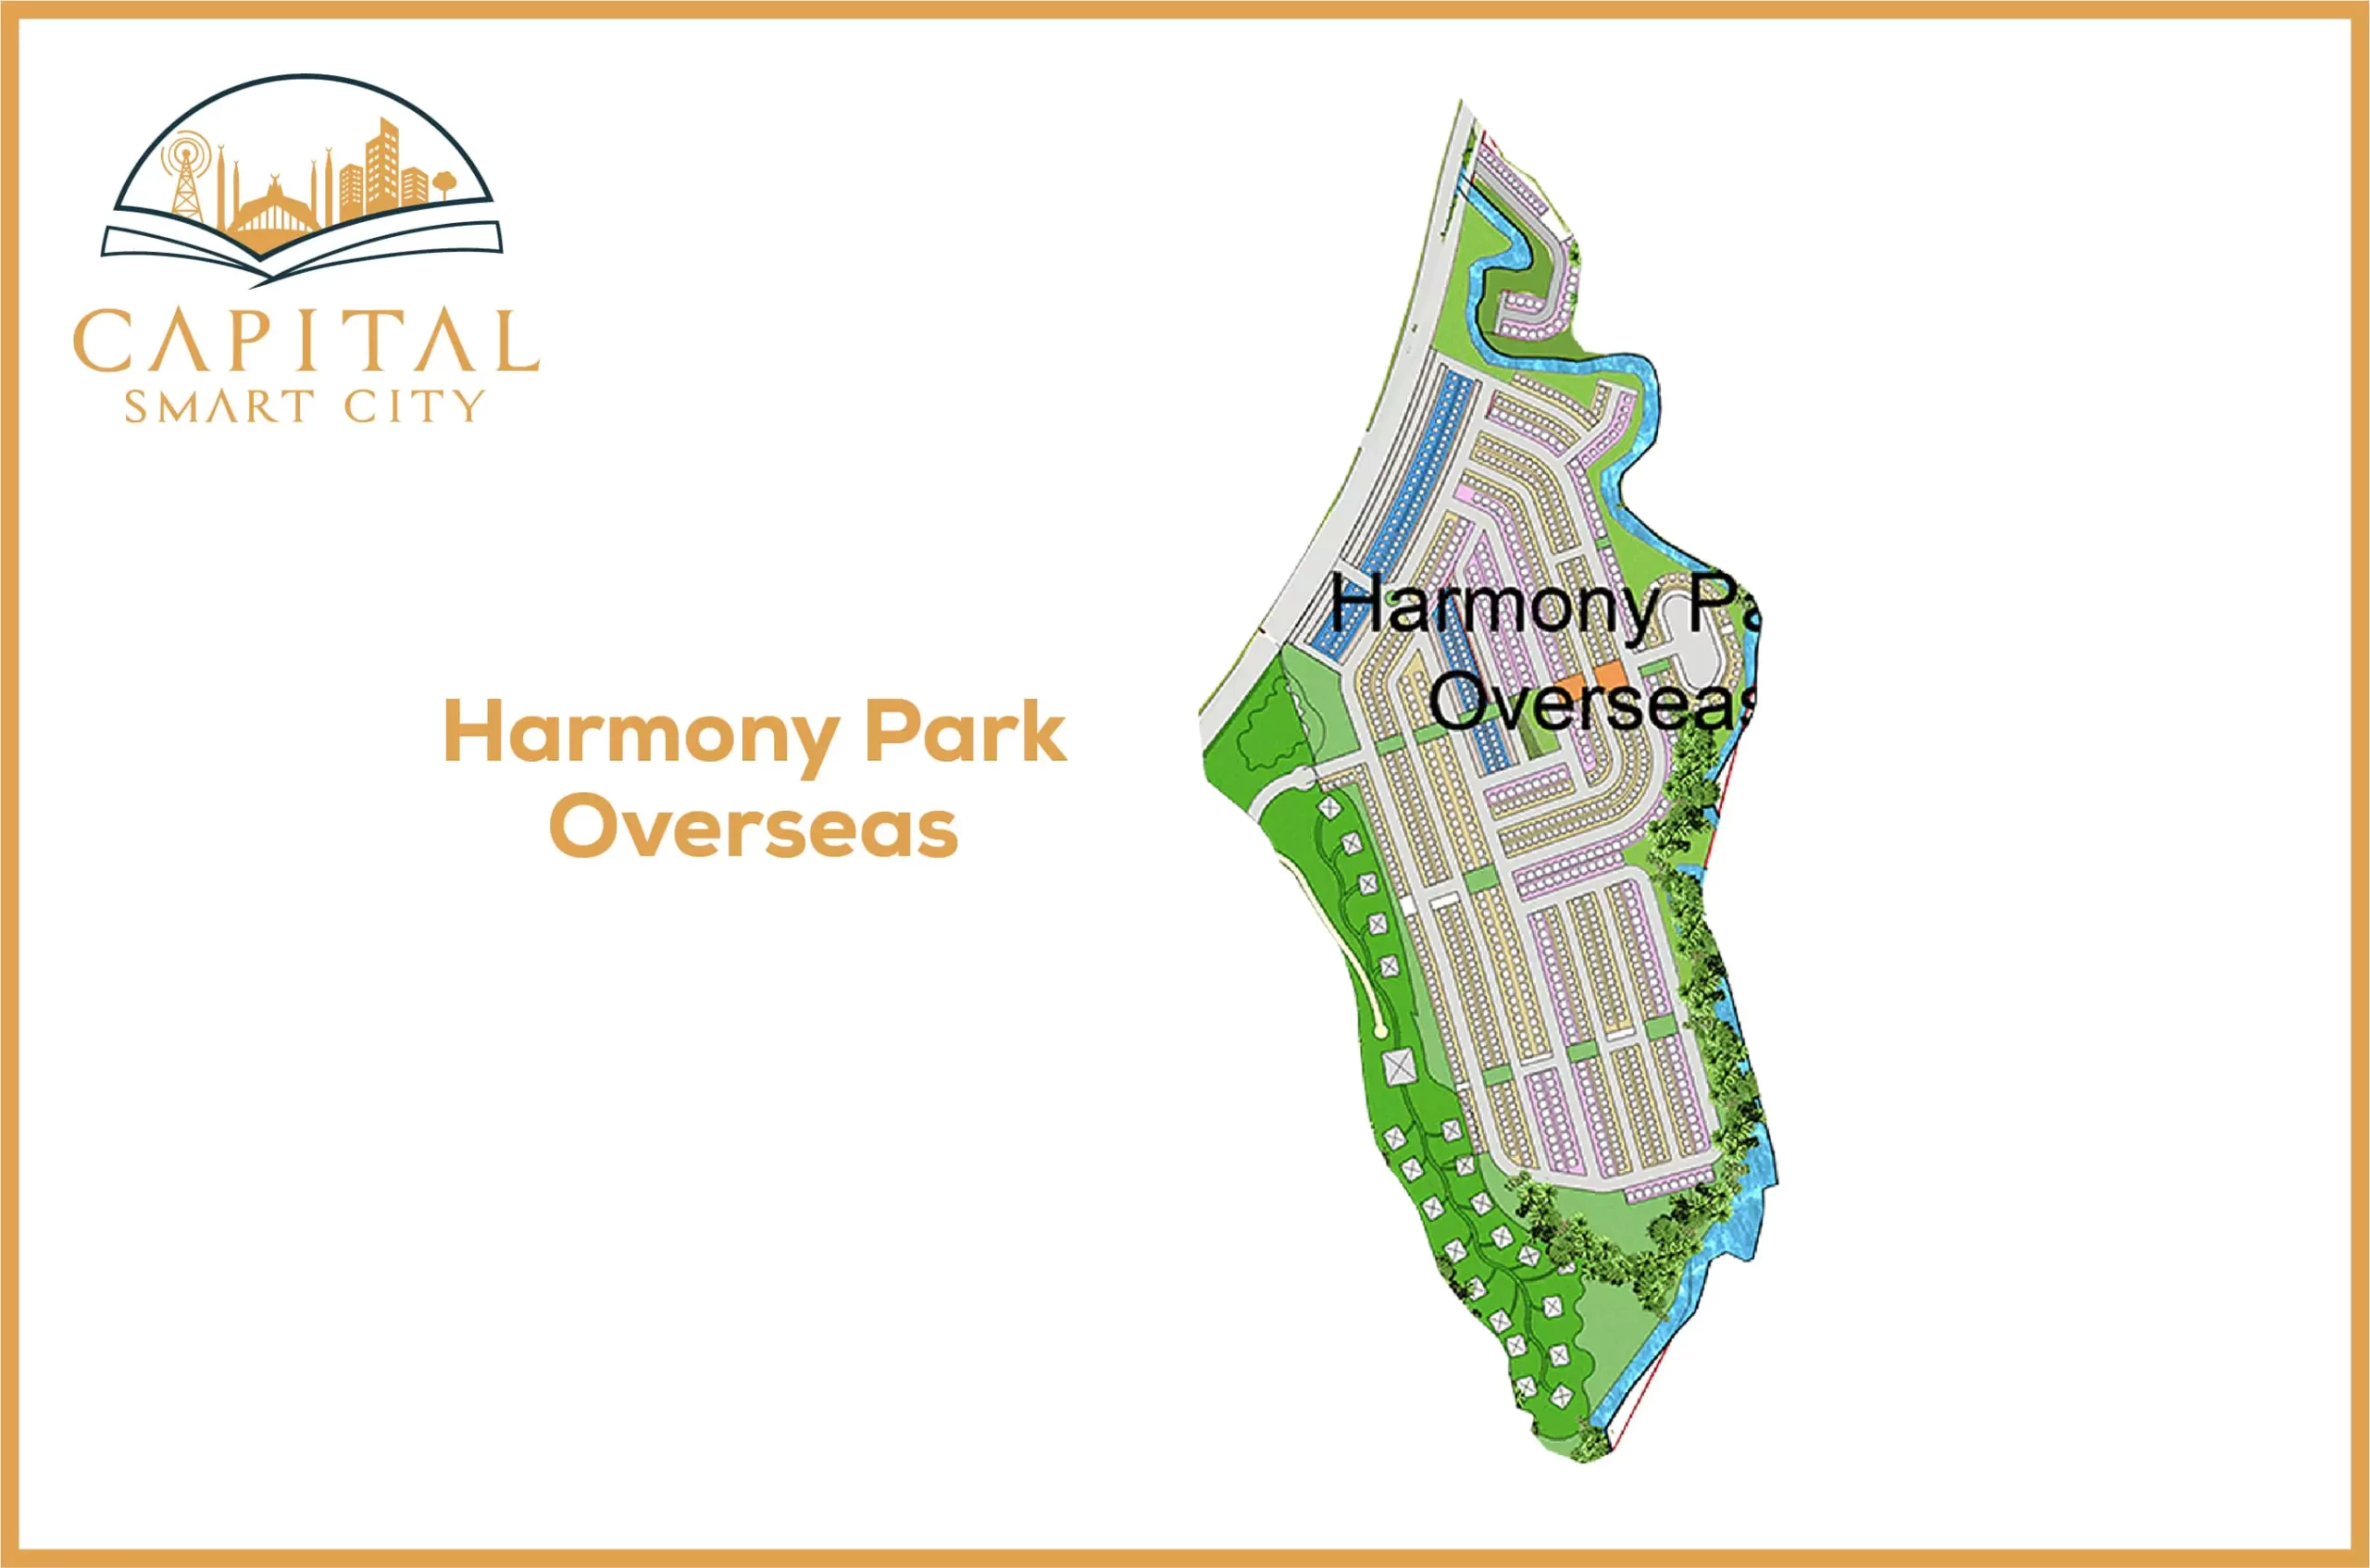 Capital Smart City Harmony Park Overseas